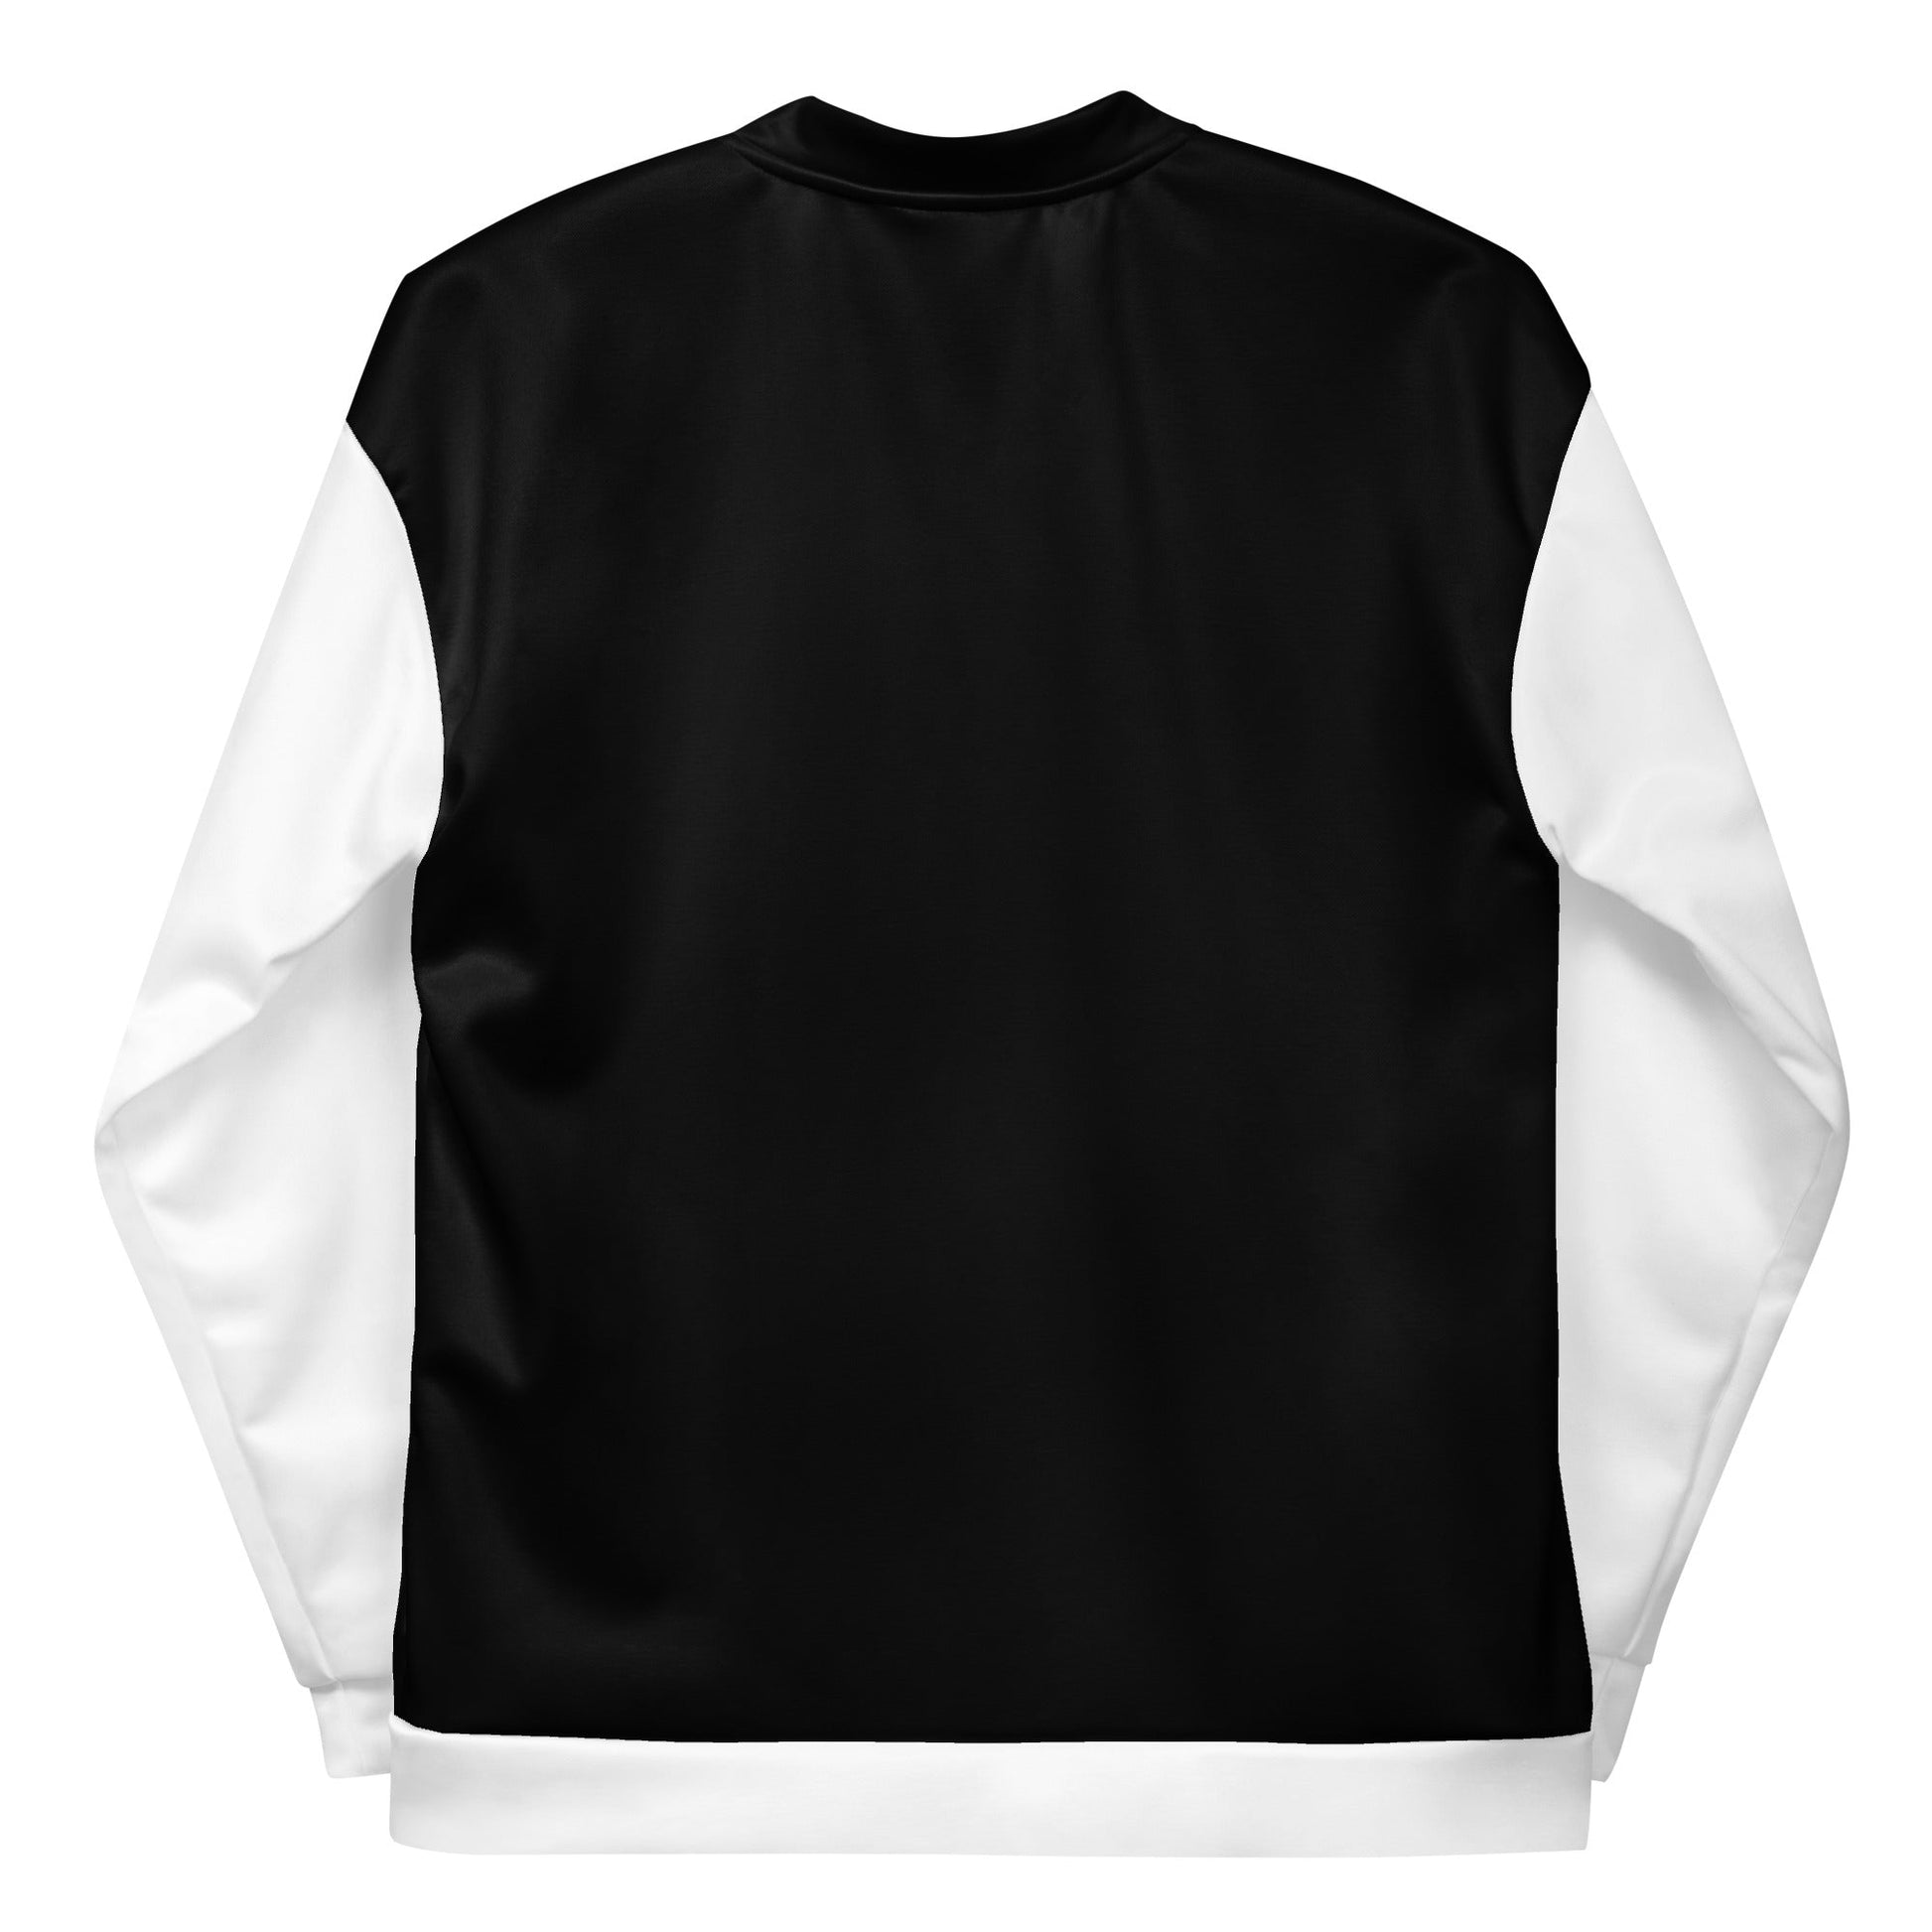 CKL Bomber Jacket (White Sleeve) - Premium Coats & Jackets from Craftklart - Just $48.0! Shop now at Craftklart